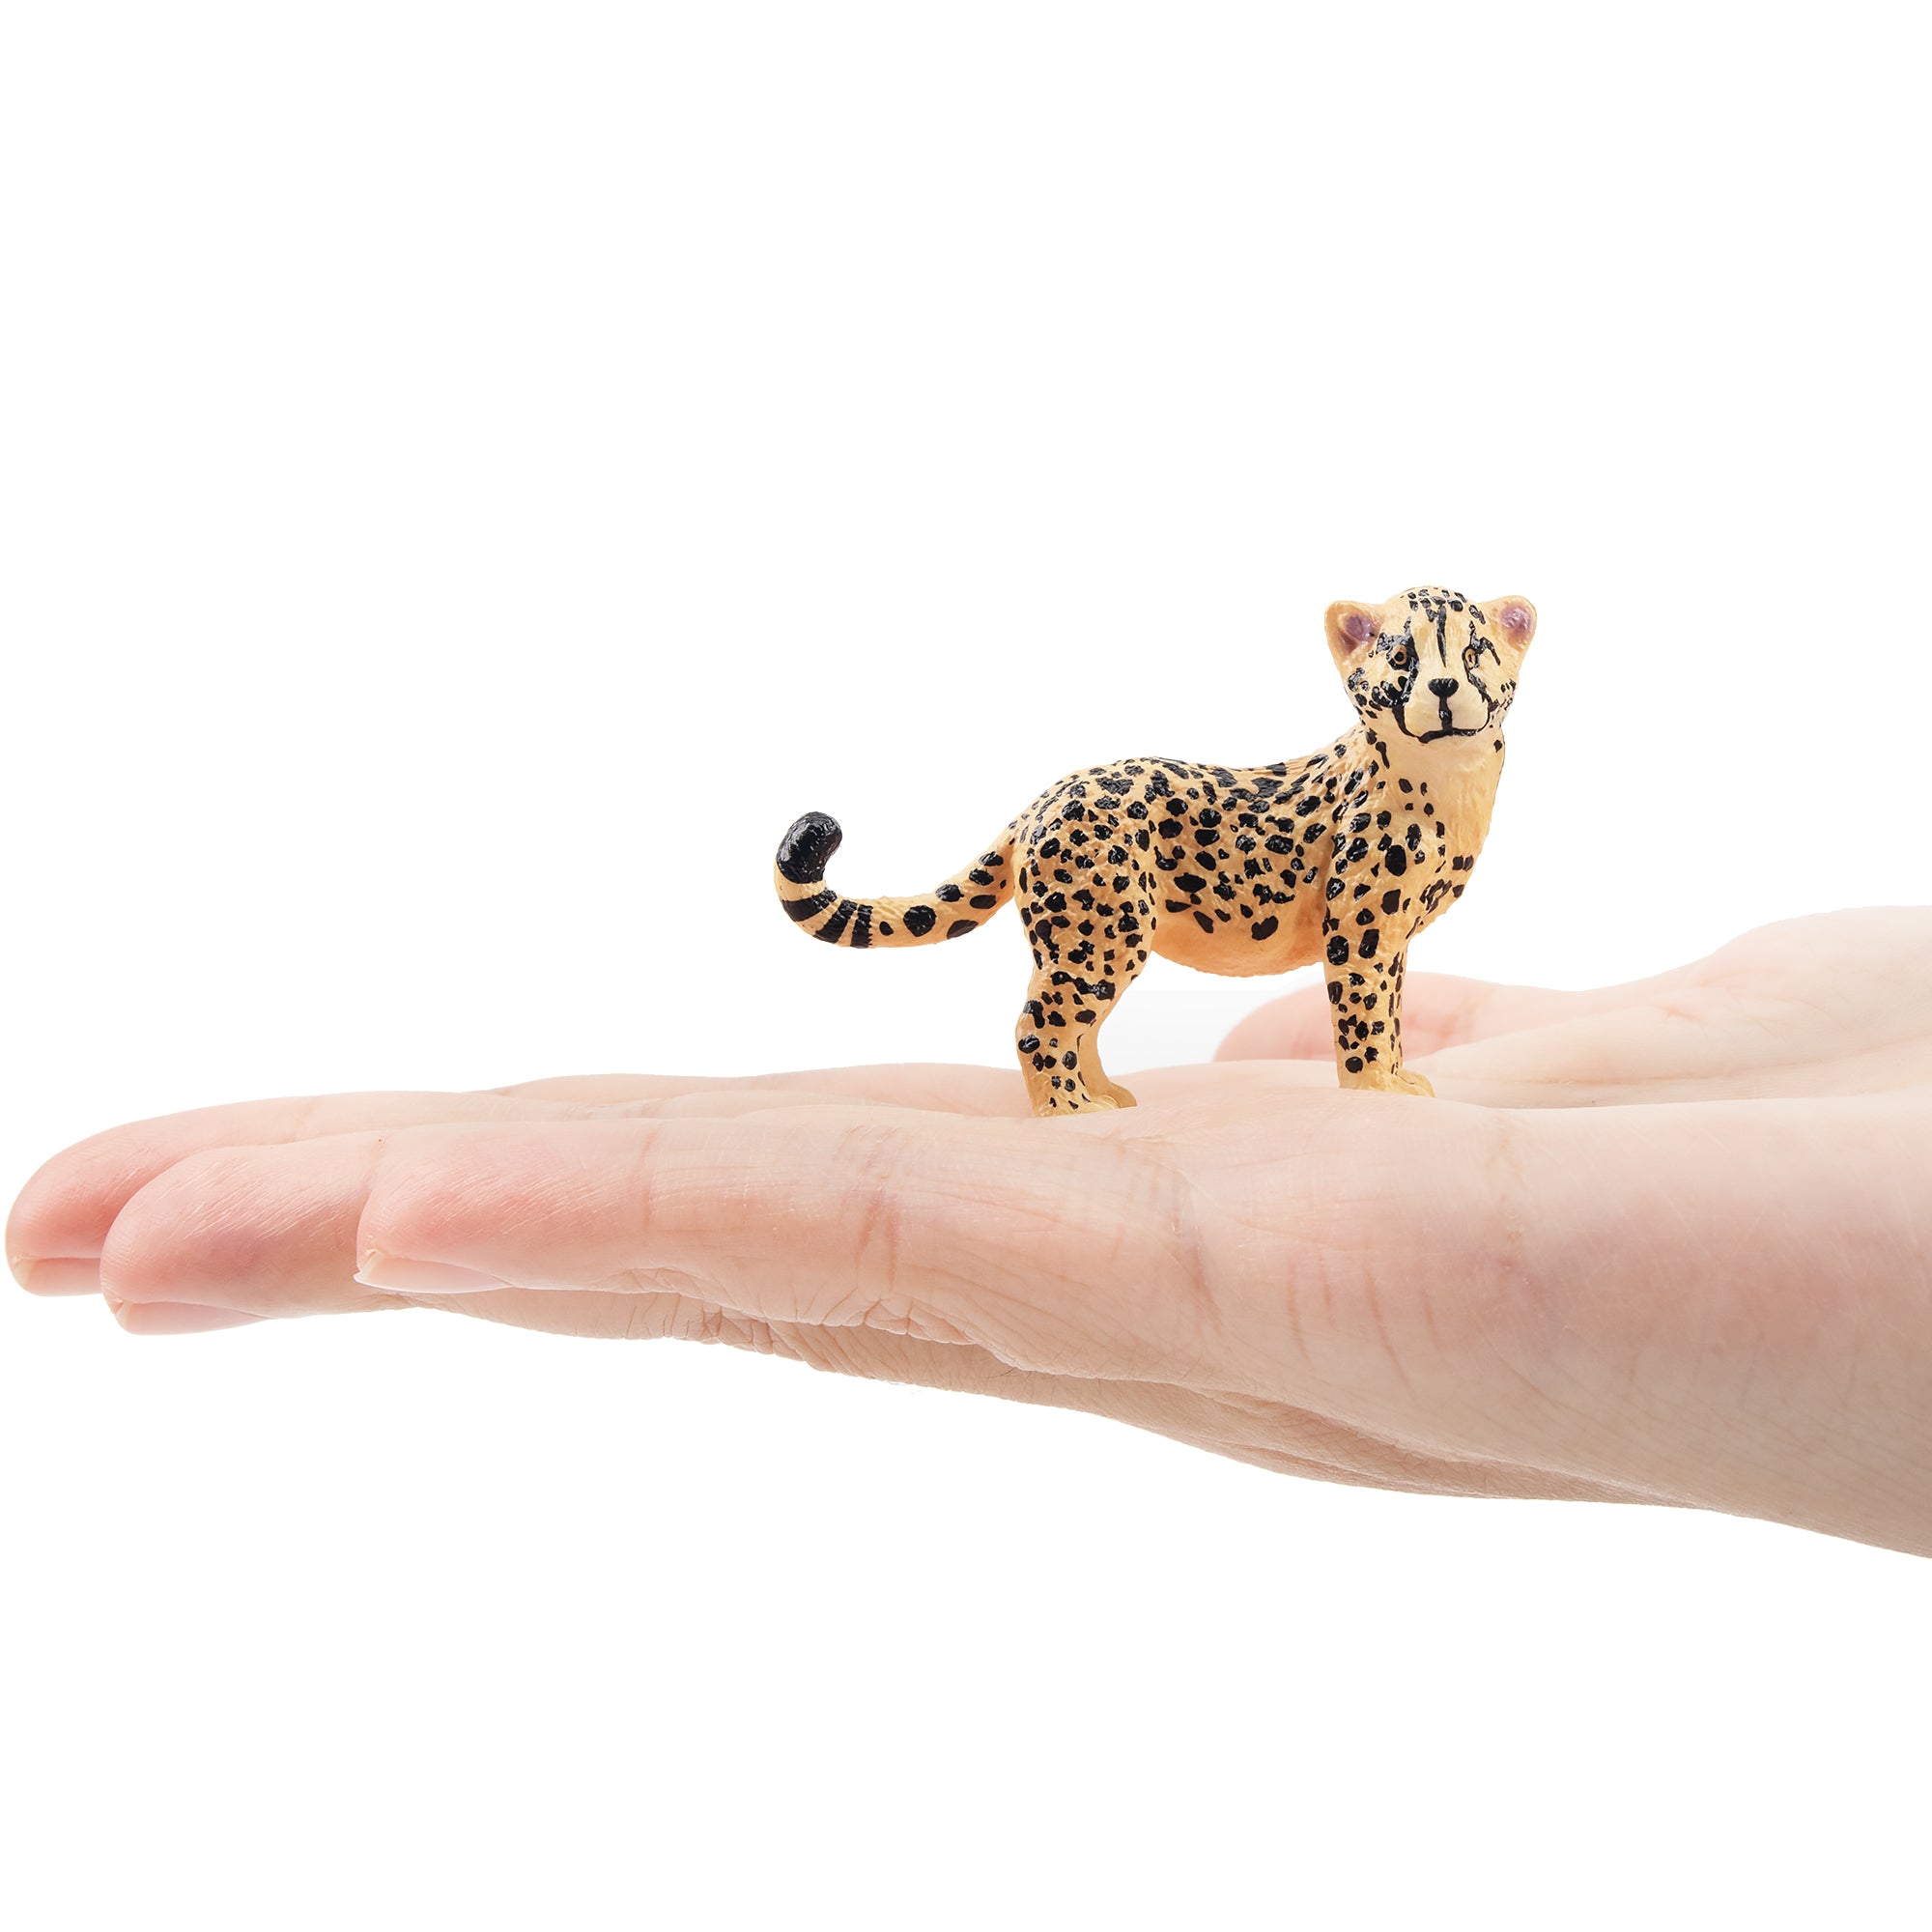 Toymany Cheetah Cub Figurine Toy-on hand